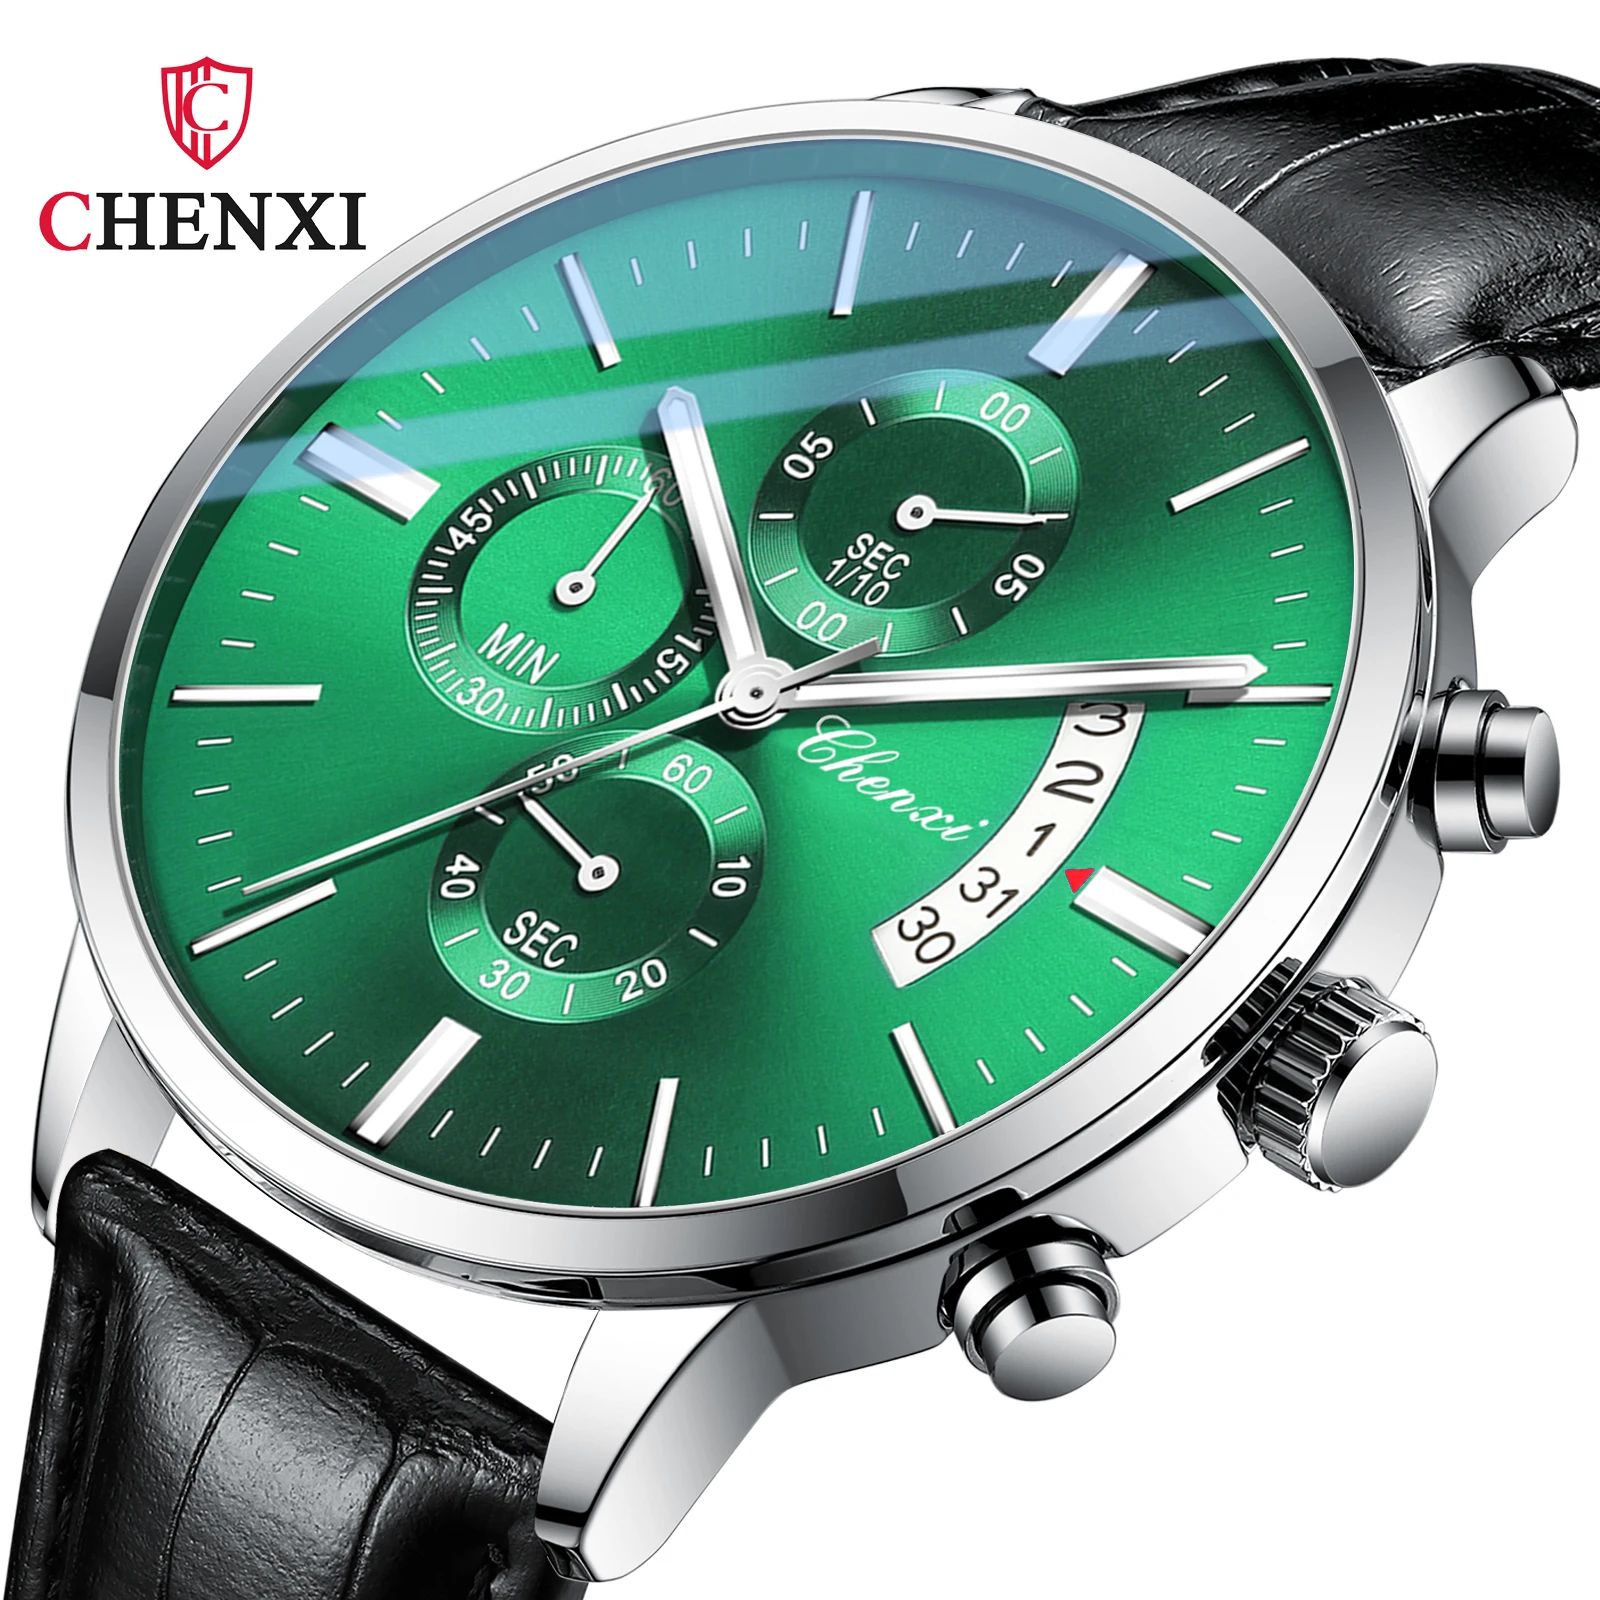 CHENXI 907 P luxusní krám muž náramkové hodinky křemen světelný datle týden hodinky pro muži hodiny kůže pánské hodinky reloj